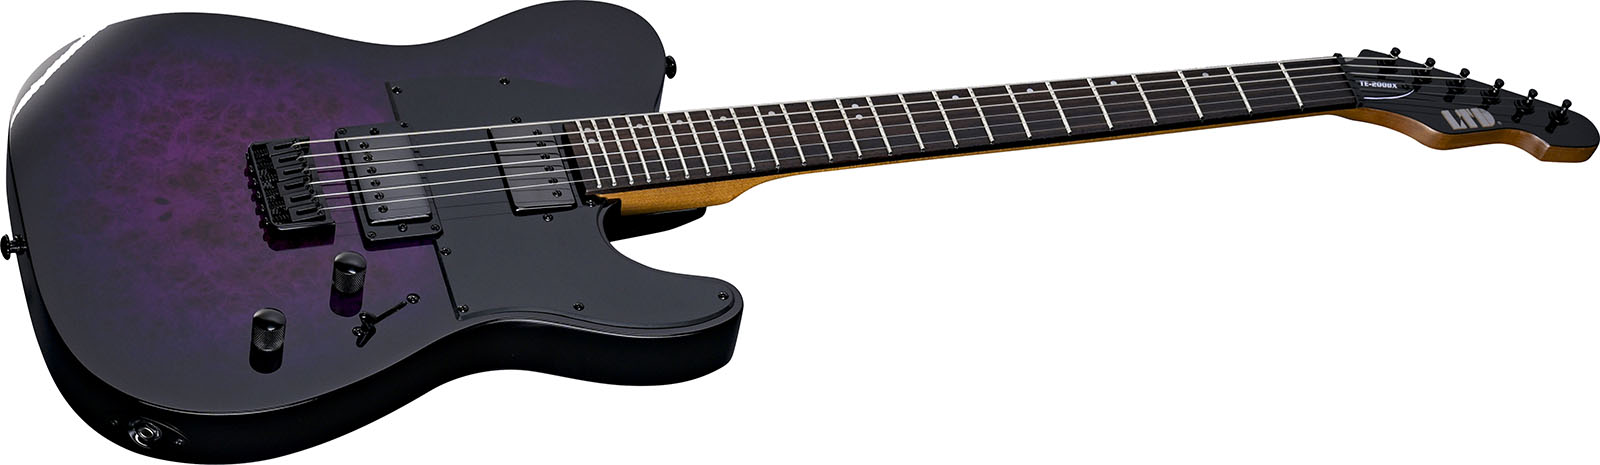 Ltd Te200dx 2h Ht Rw - Purple Burst - Televorm elektrische gitaar - Variation 2